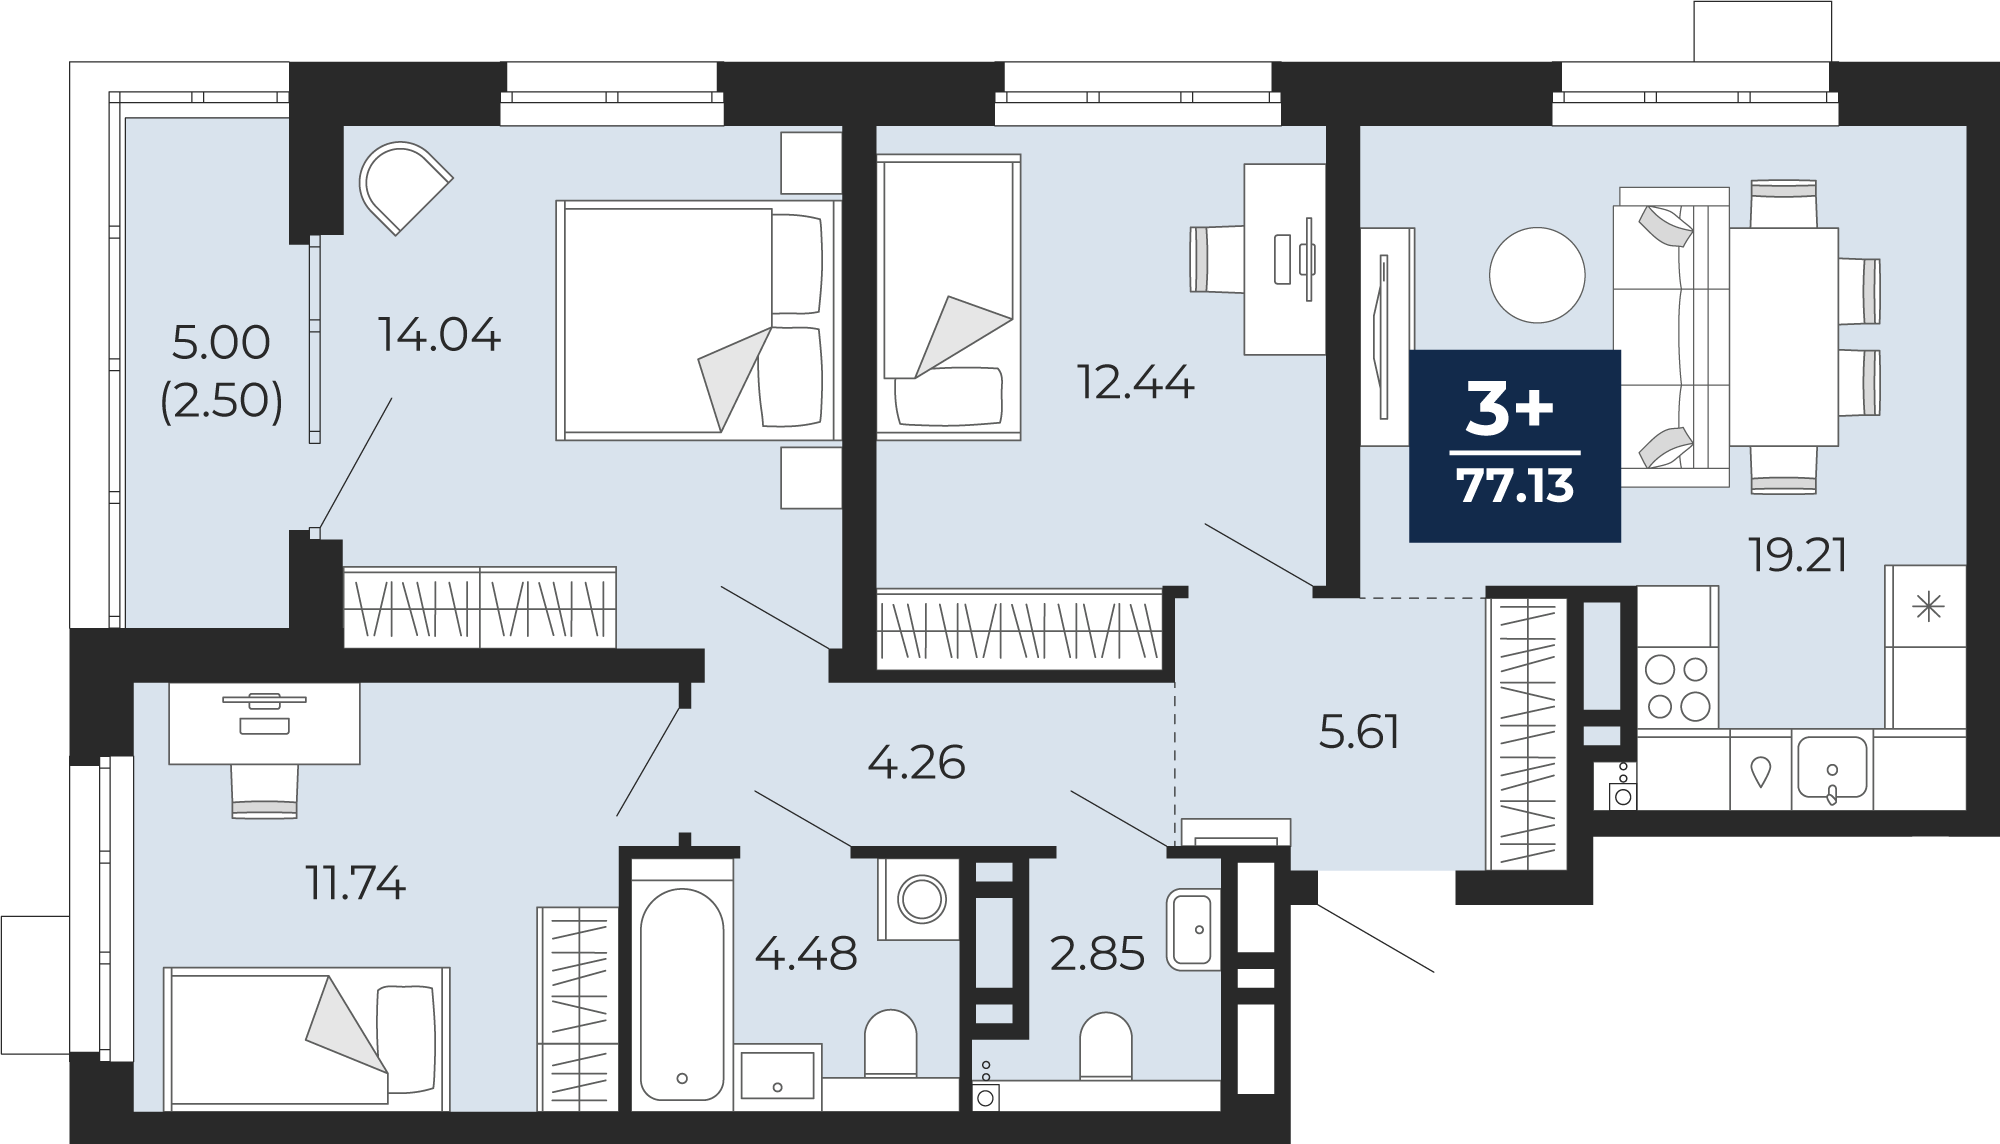 Квартира № 22, 3-комнатная, 77.13 кв. м, 4 этаж